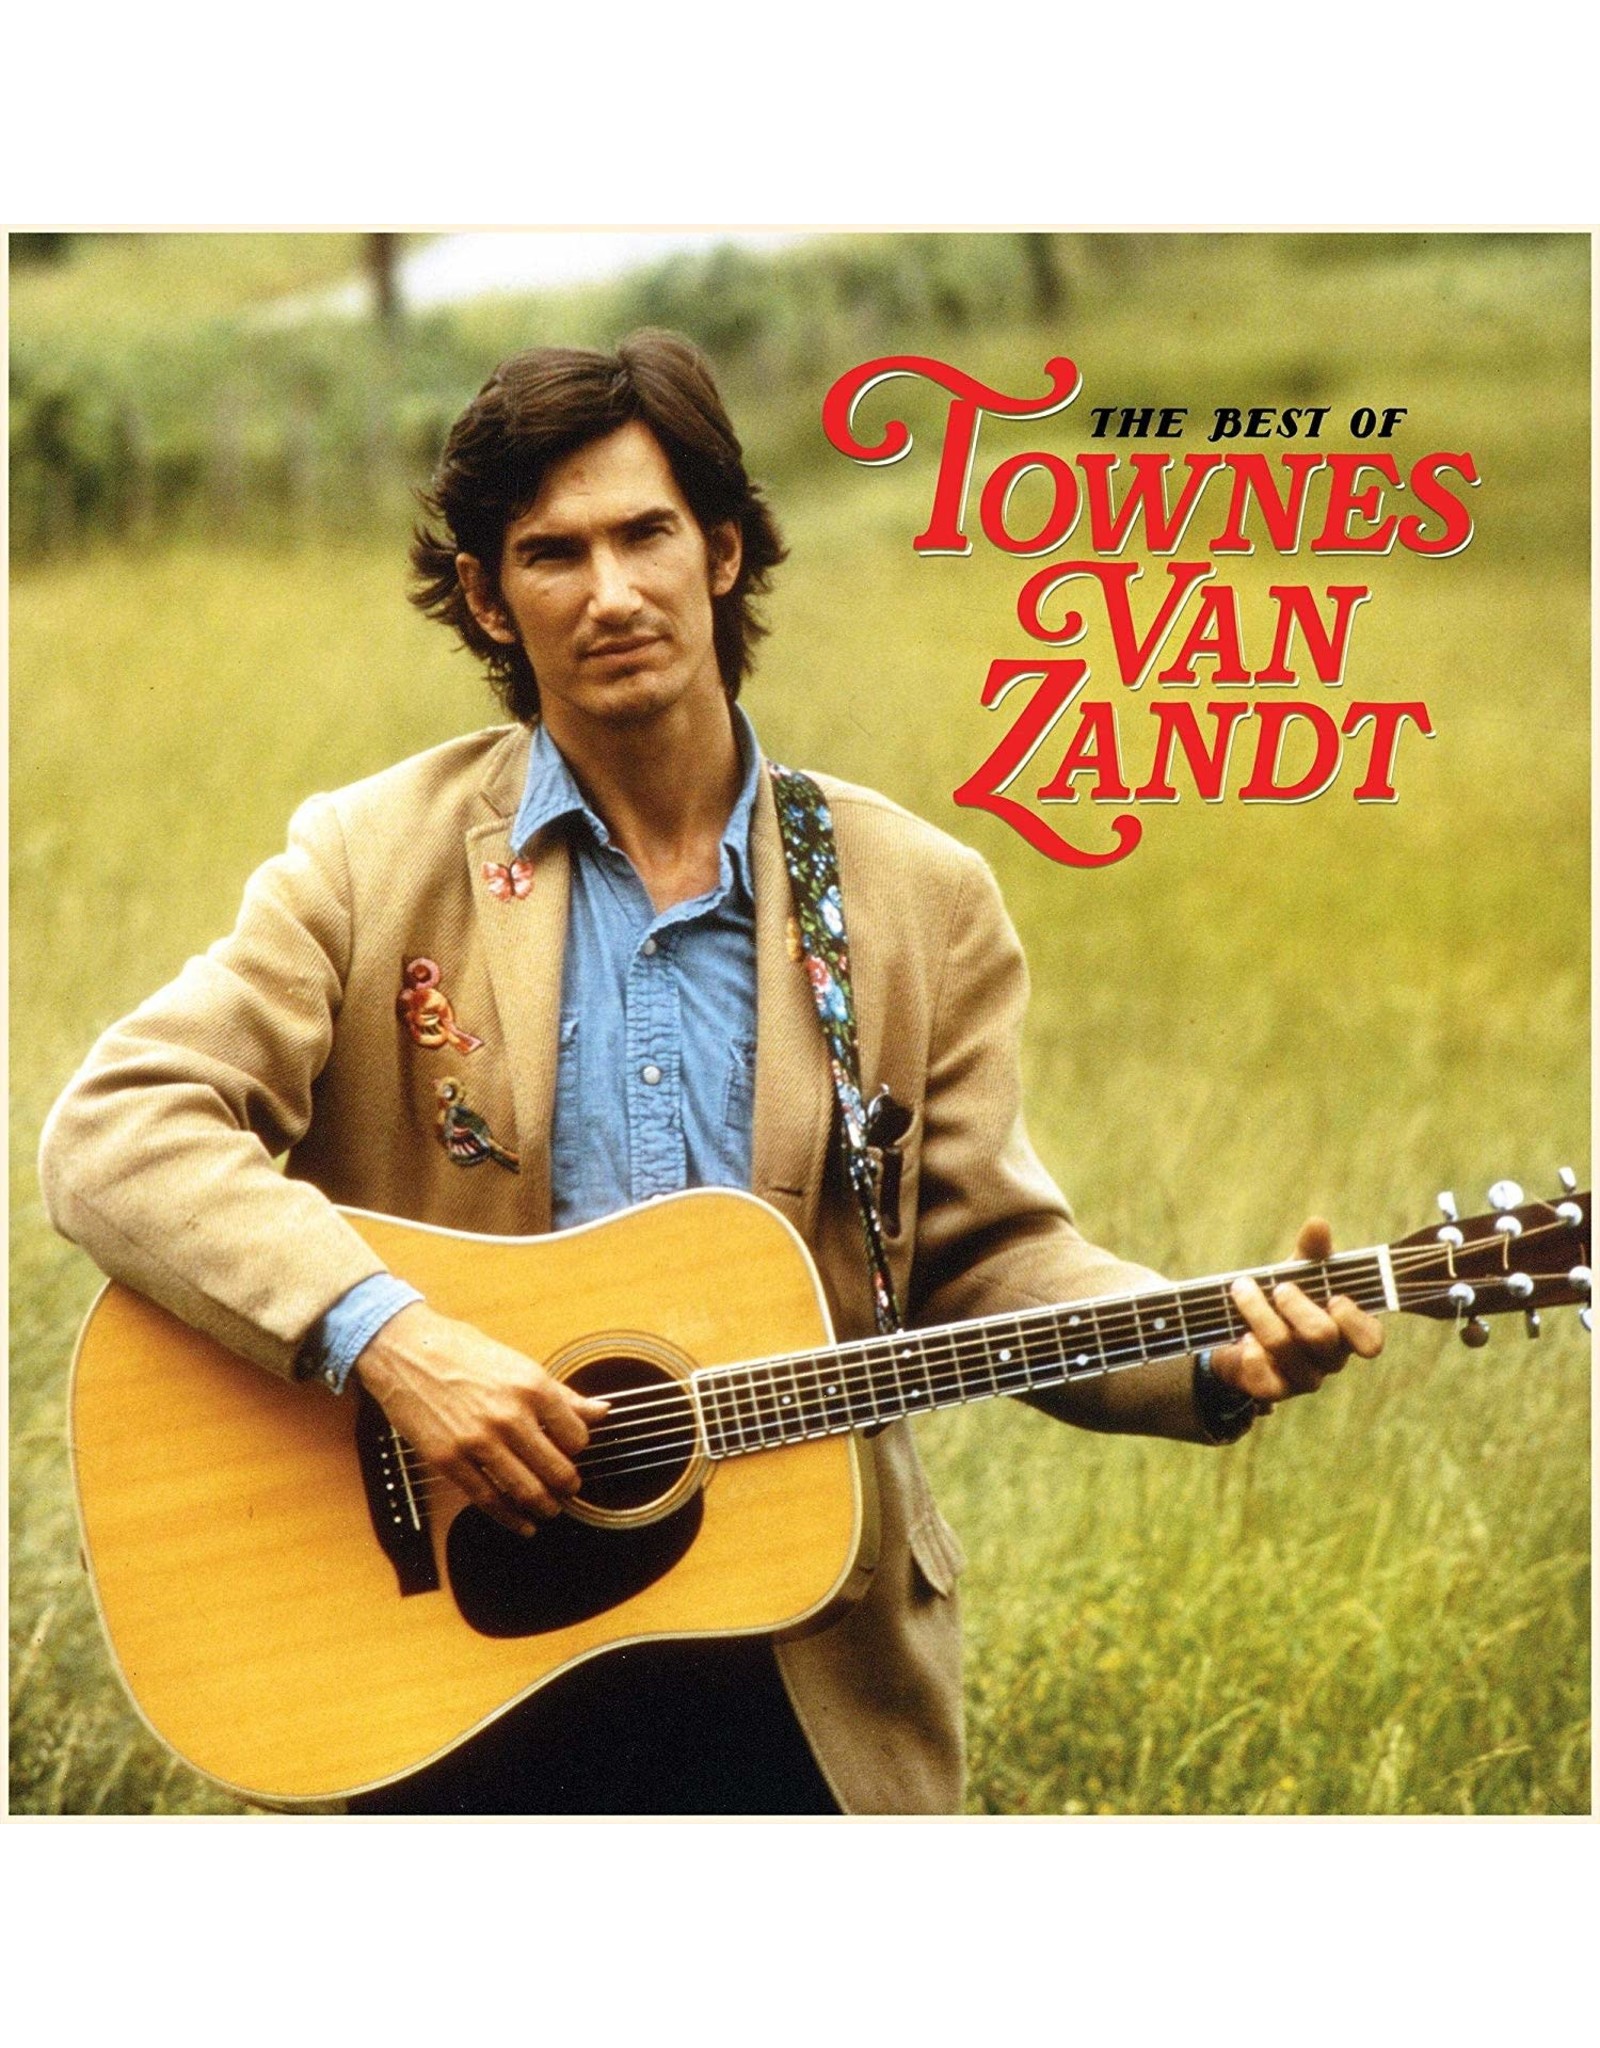 Townes Van Zandt - Best of Townes Van Zandt